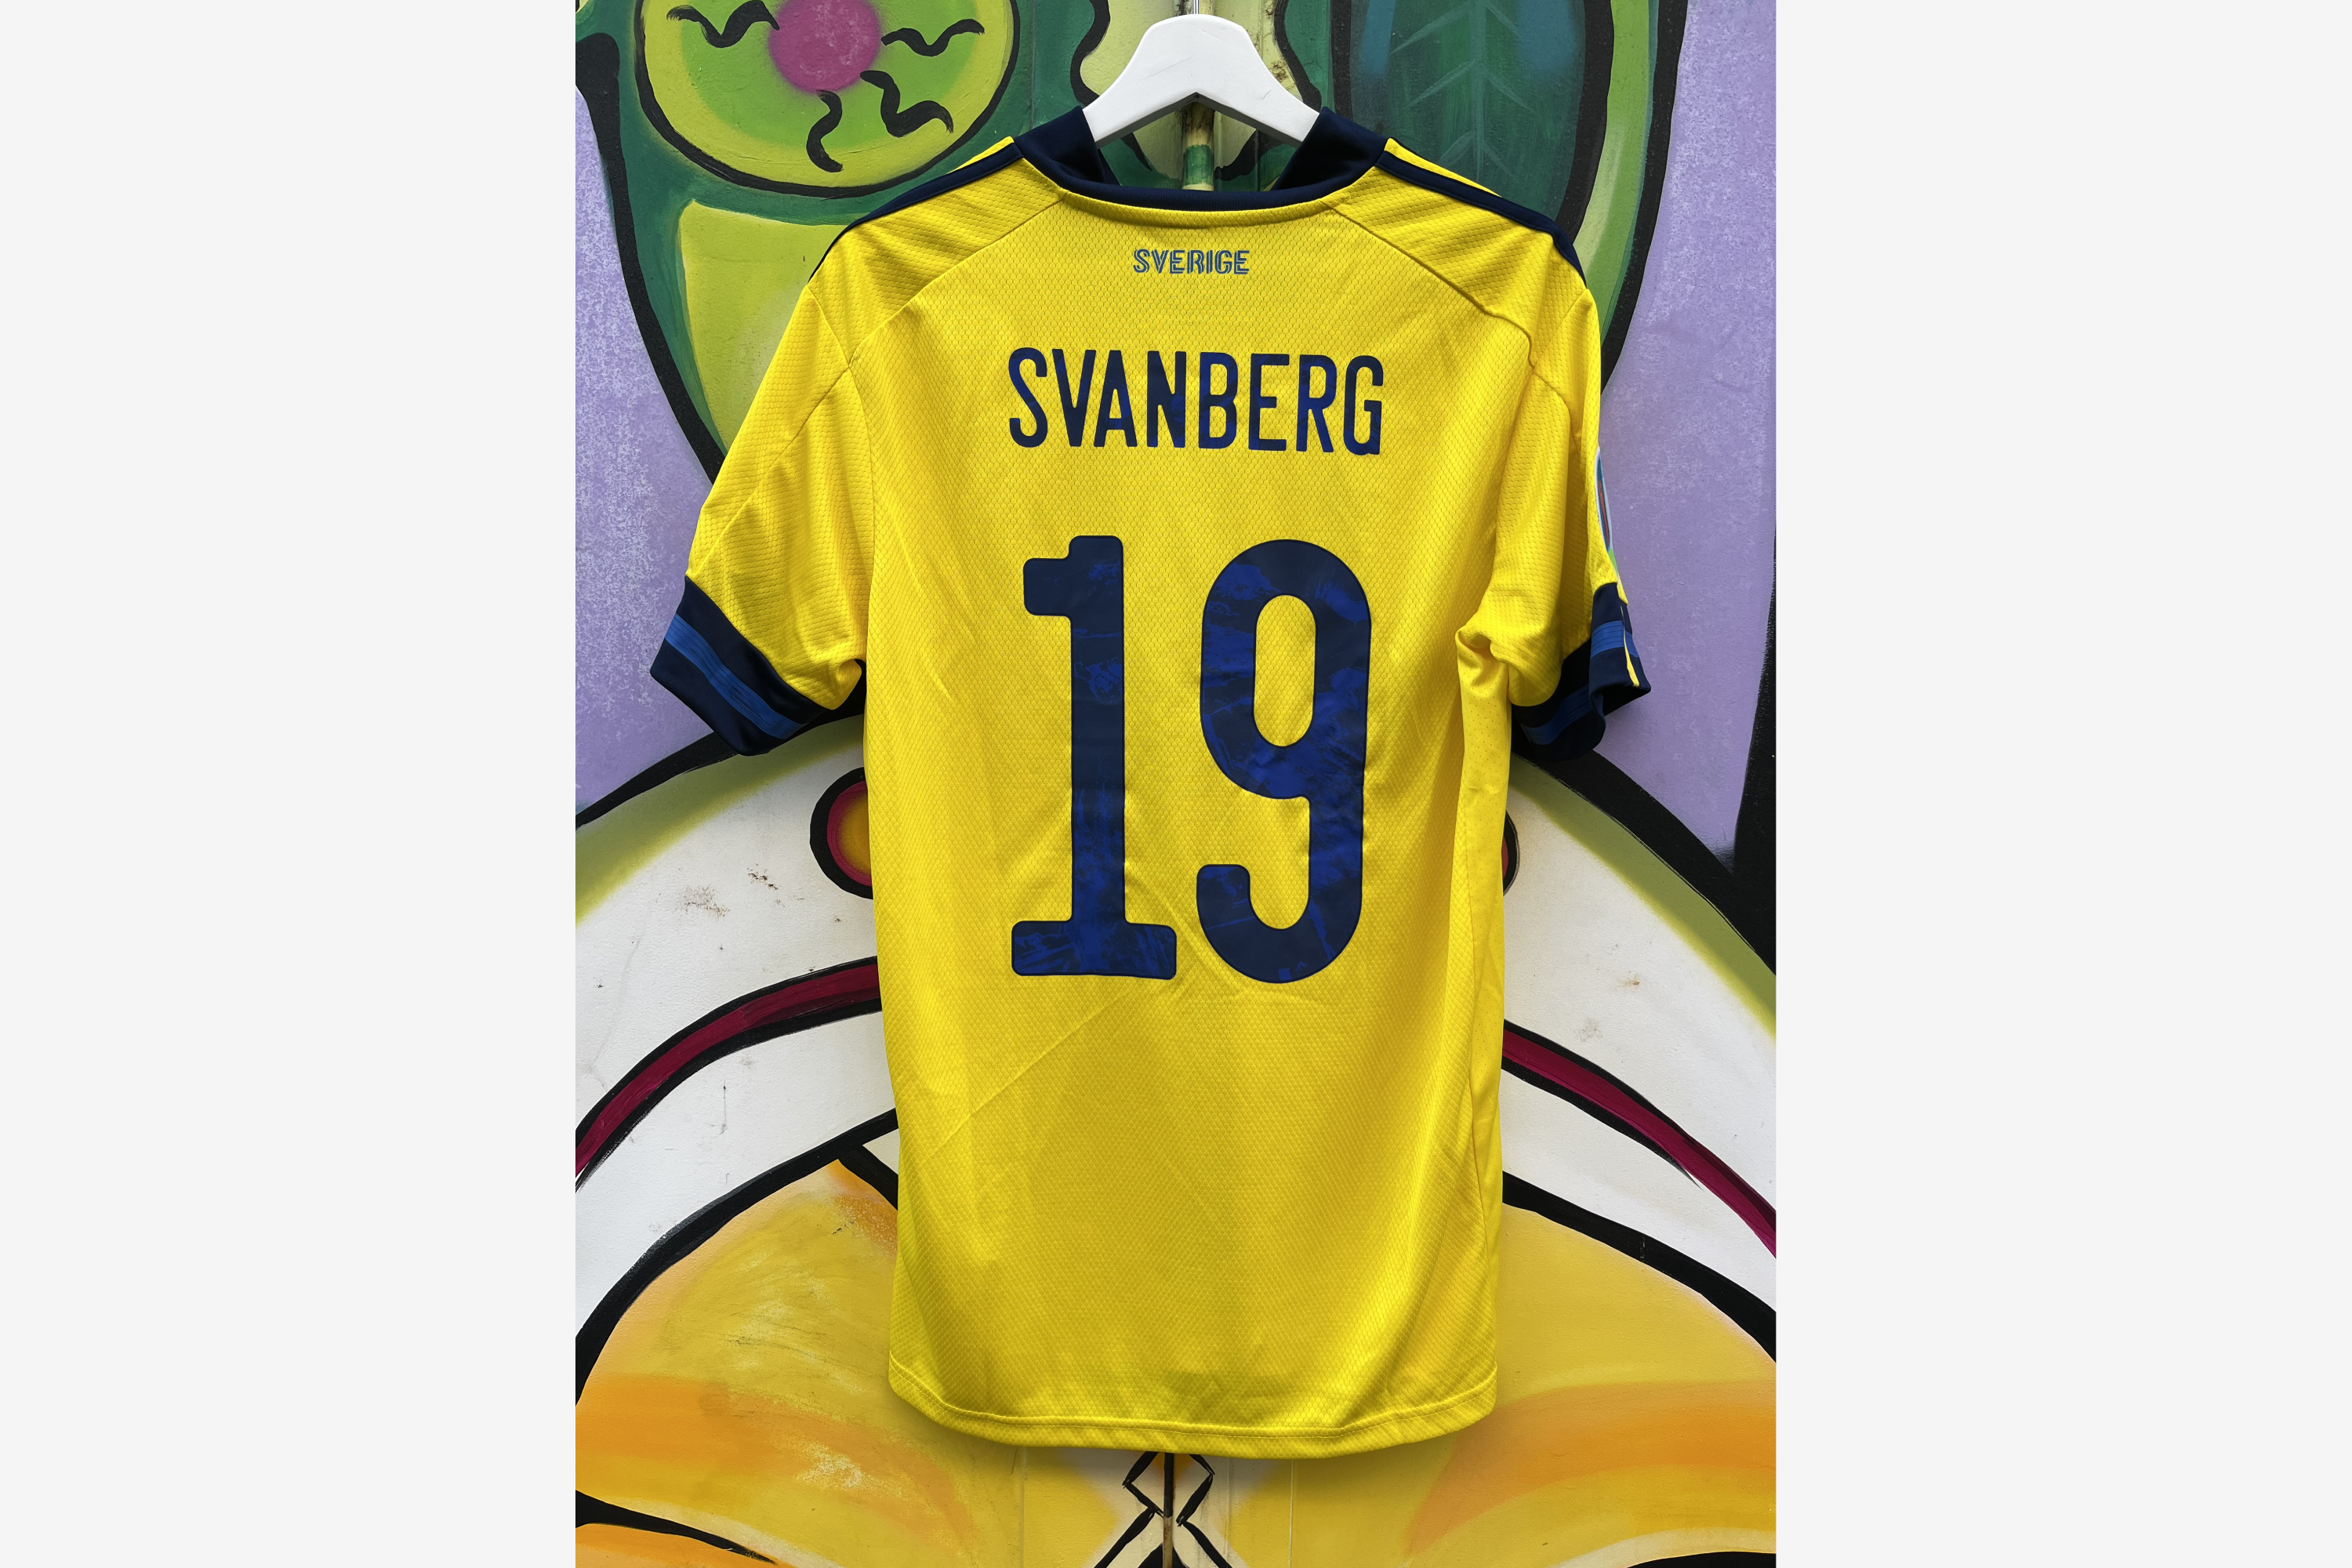 Adidas - Sweden 2020/21 Home Football Shirt Spain - Sweden 'SVANBERG' (Match Worn)